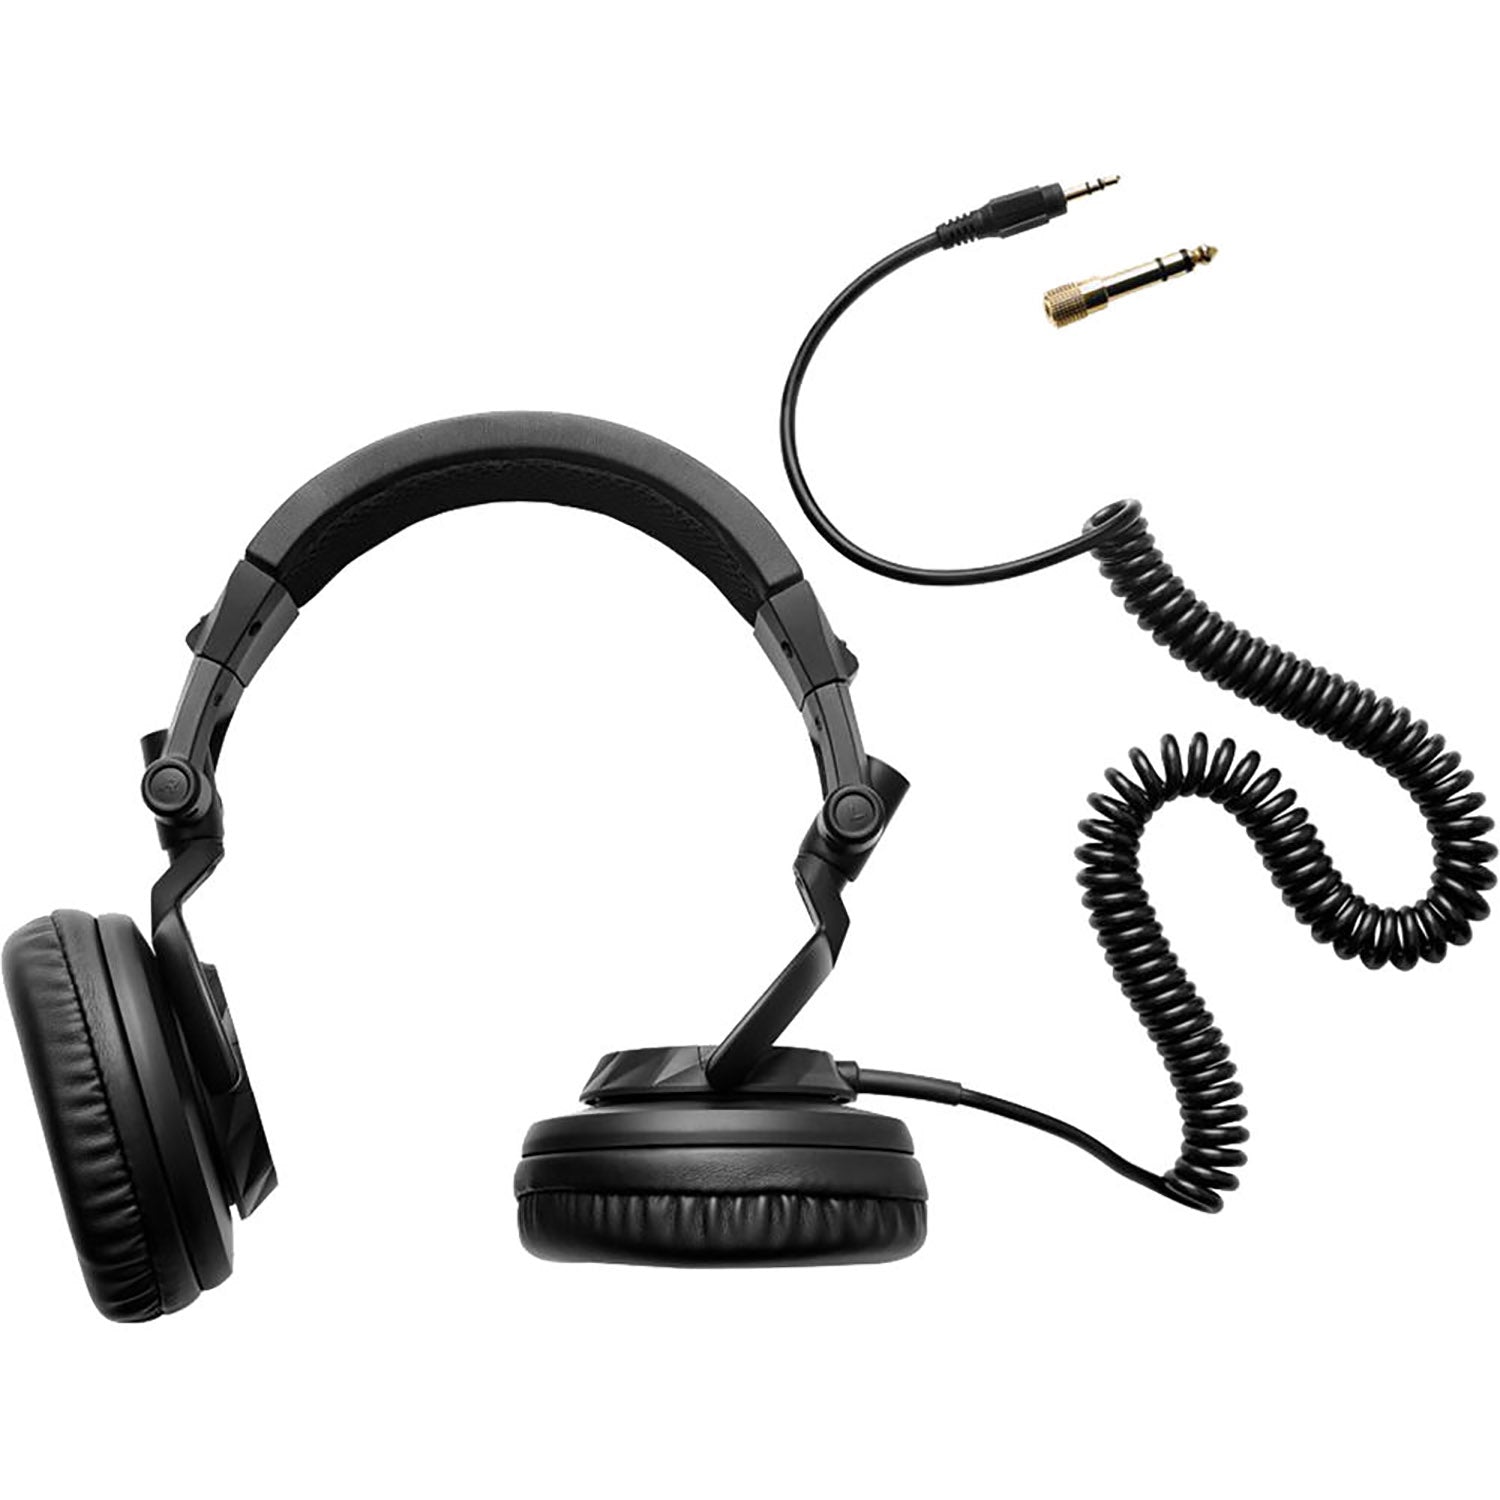 B-Stock: Hercules HDP DJ45 Closed-Back, Over-Ear DJ Headphones by Hercules DJ